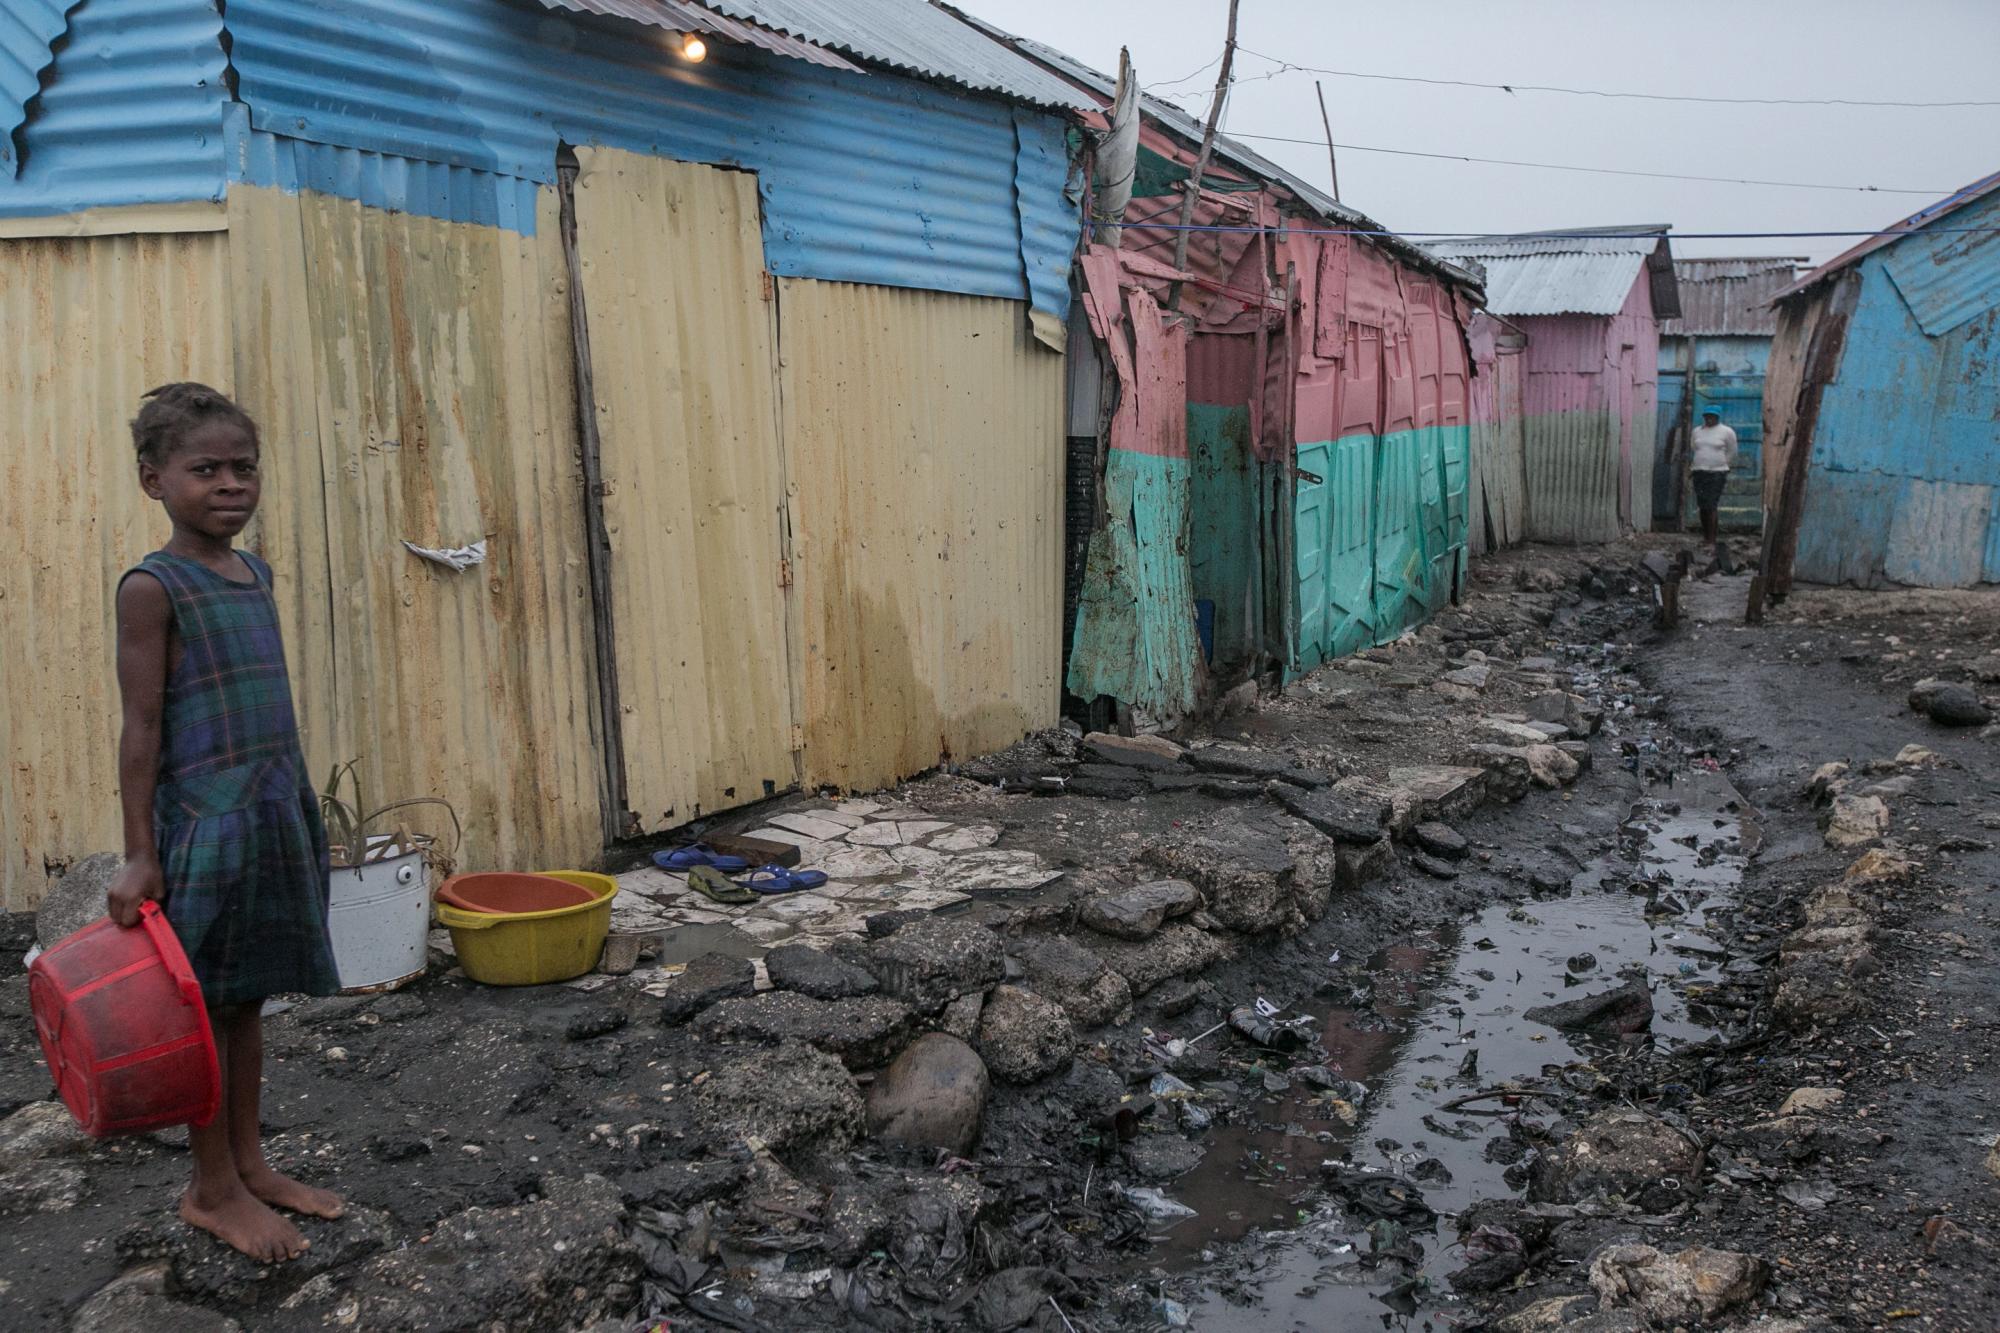 Fotos: Gobierno haitiano no ha tomado medidas preventivas en uno de los barrios más pobres y vulnerables